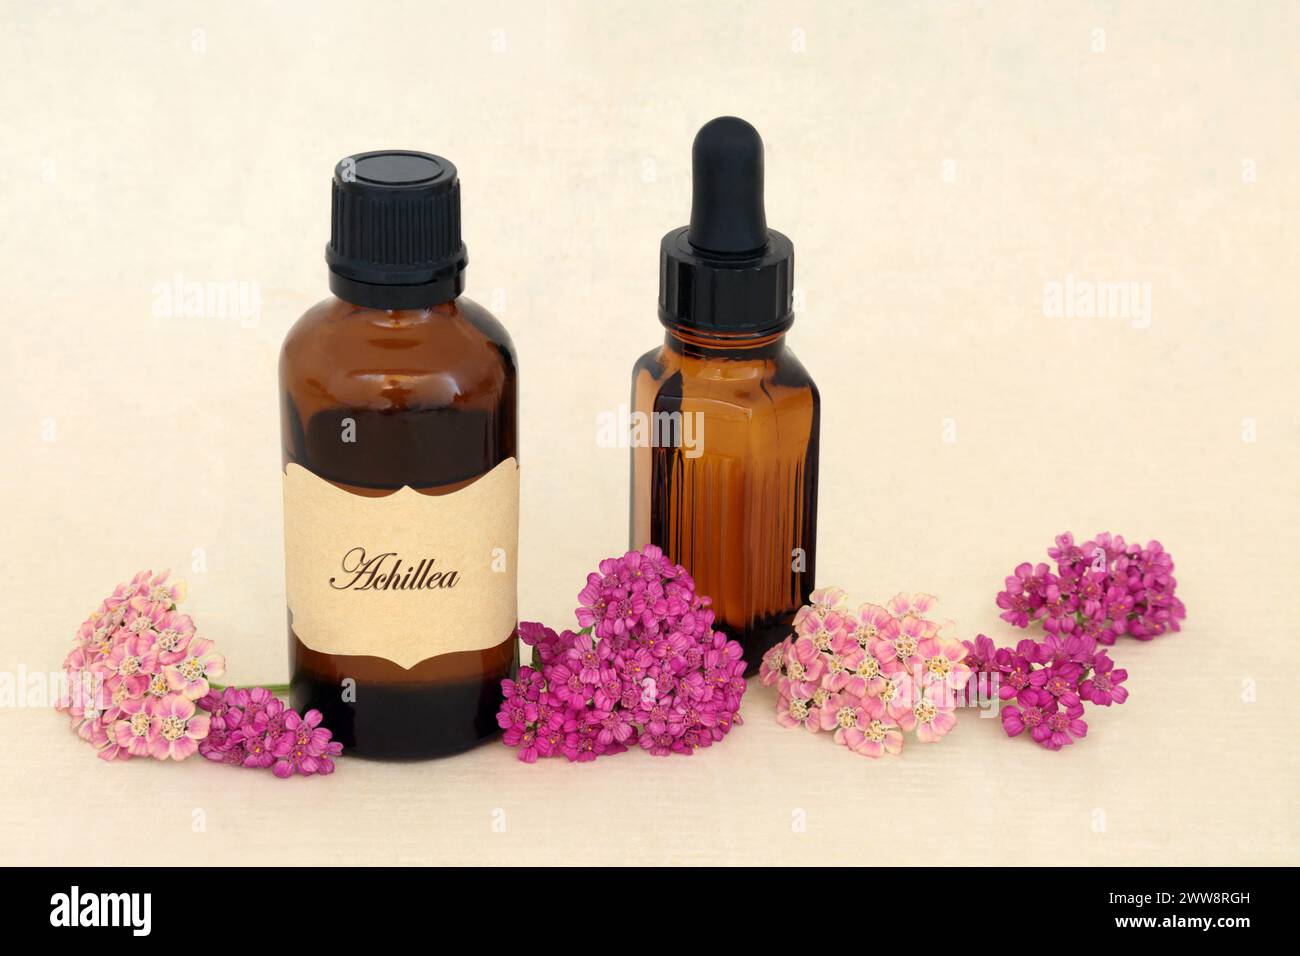 Essenza di fiori di Achillea yarrow per erbe medicinali naturali con tintura e bottiglie di olio essenziale. Cura emorroidi, ferite, gonfiore. Foto Stock